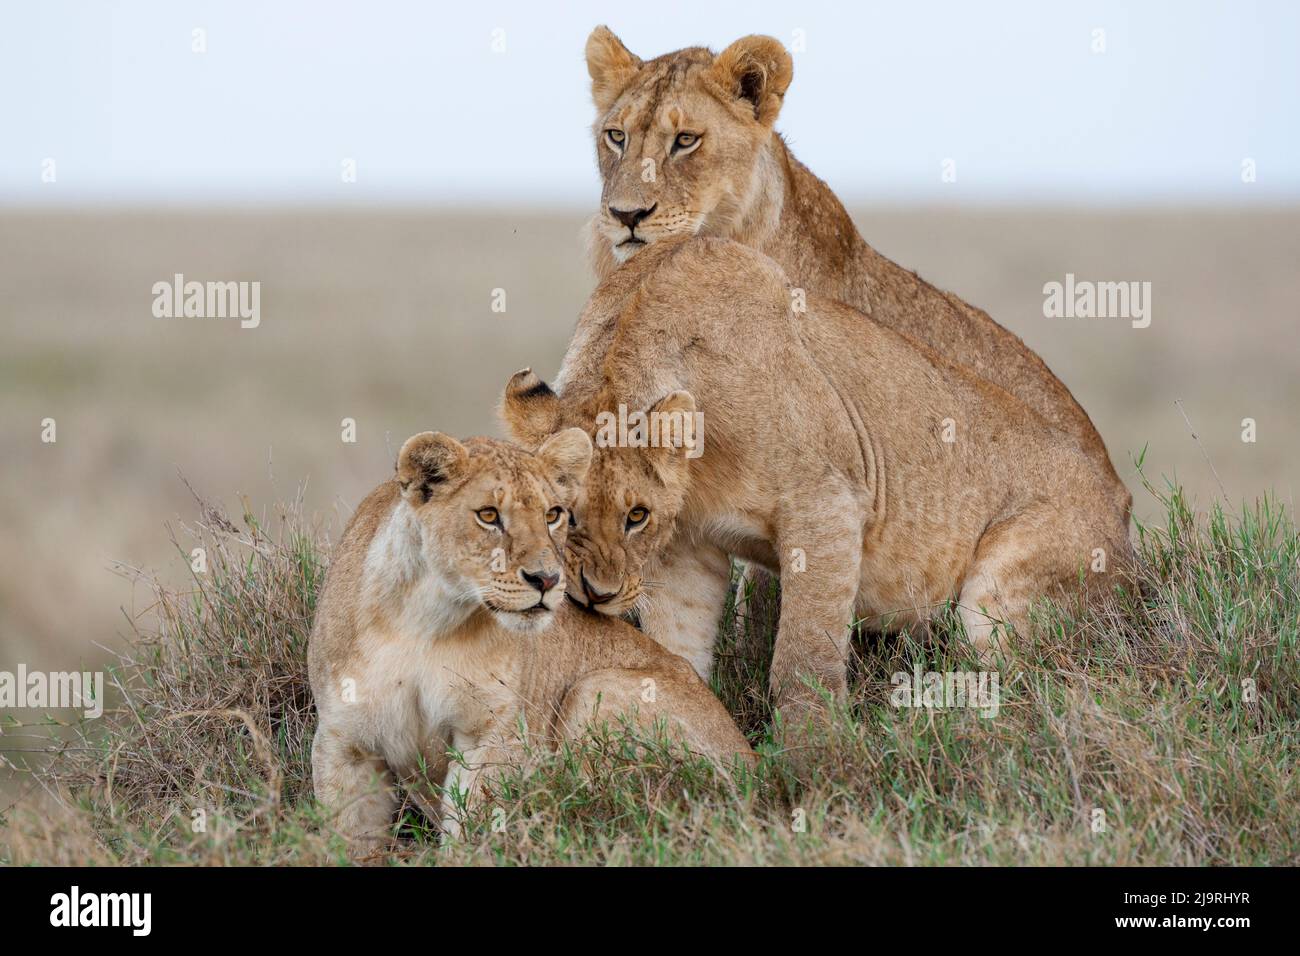 Afrique, Tanzanie. Une lionne est assise avec ses deux petits. Banque D'Images